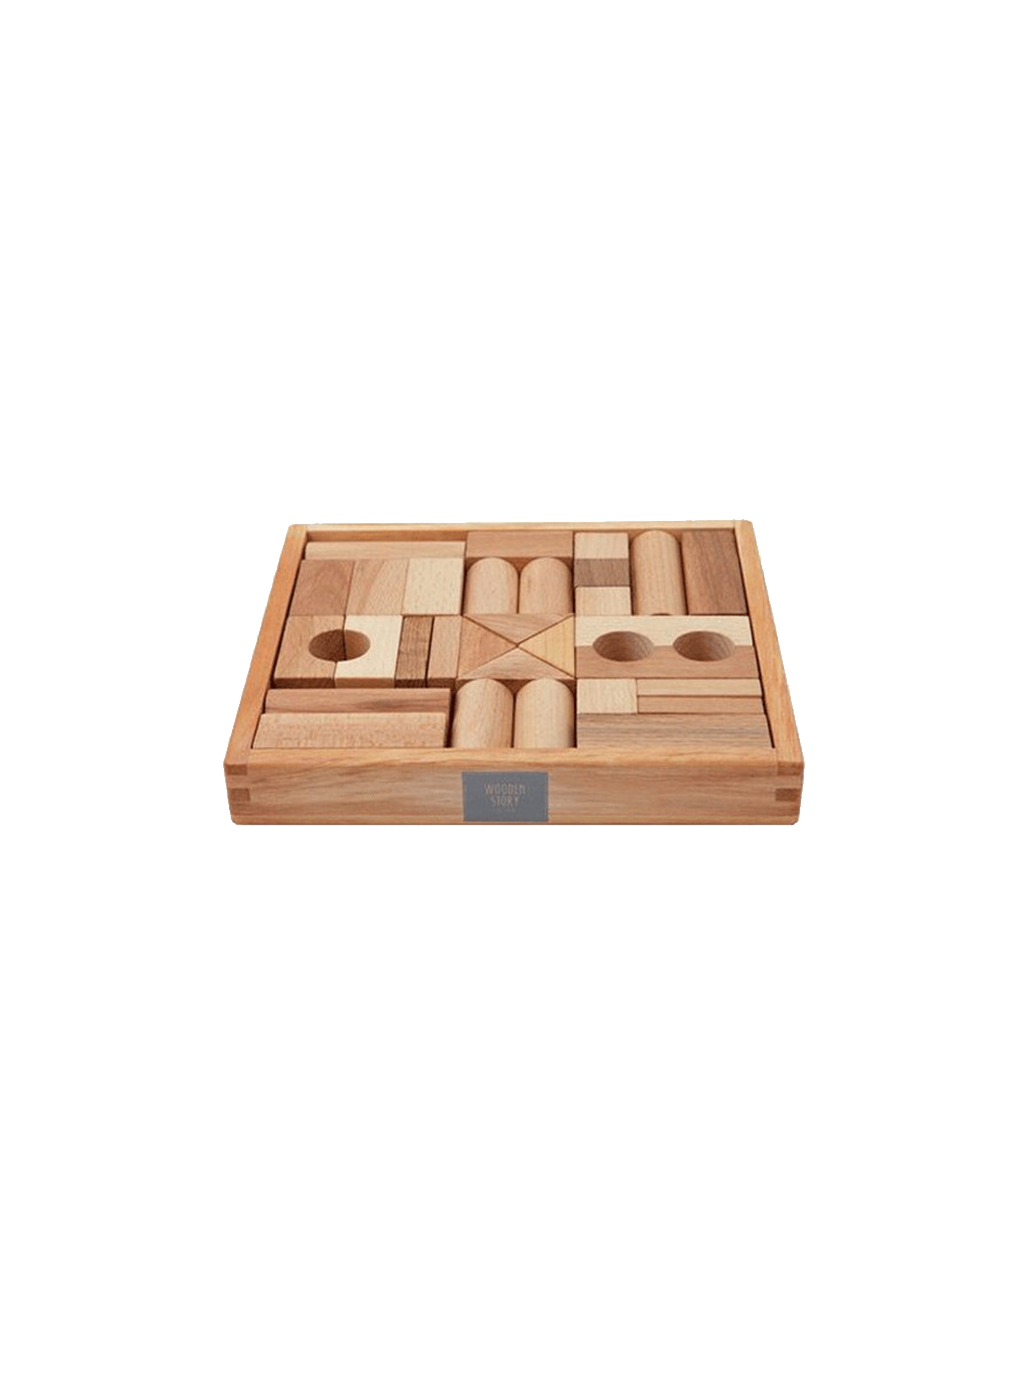 dřevěné kostky v krabici po 30 ks.